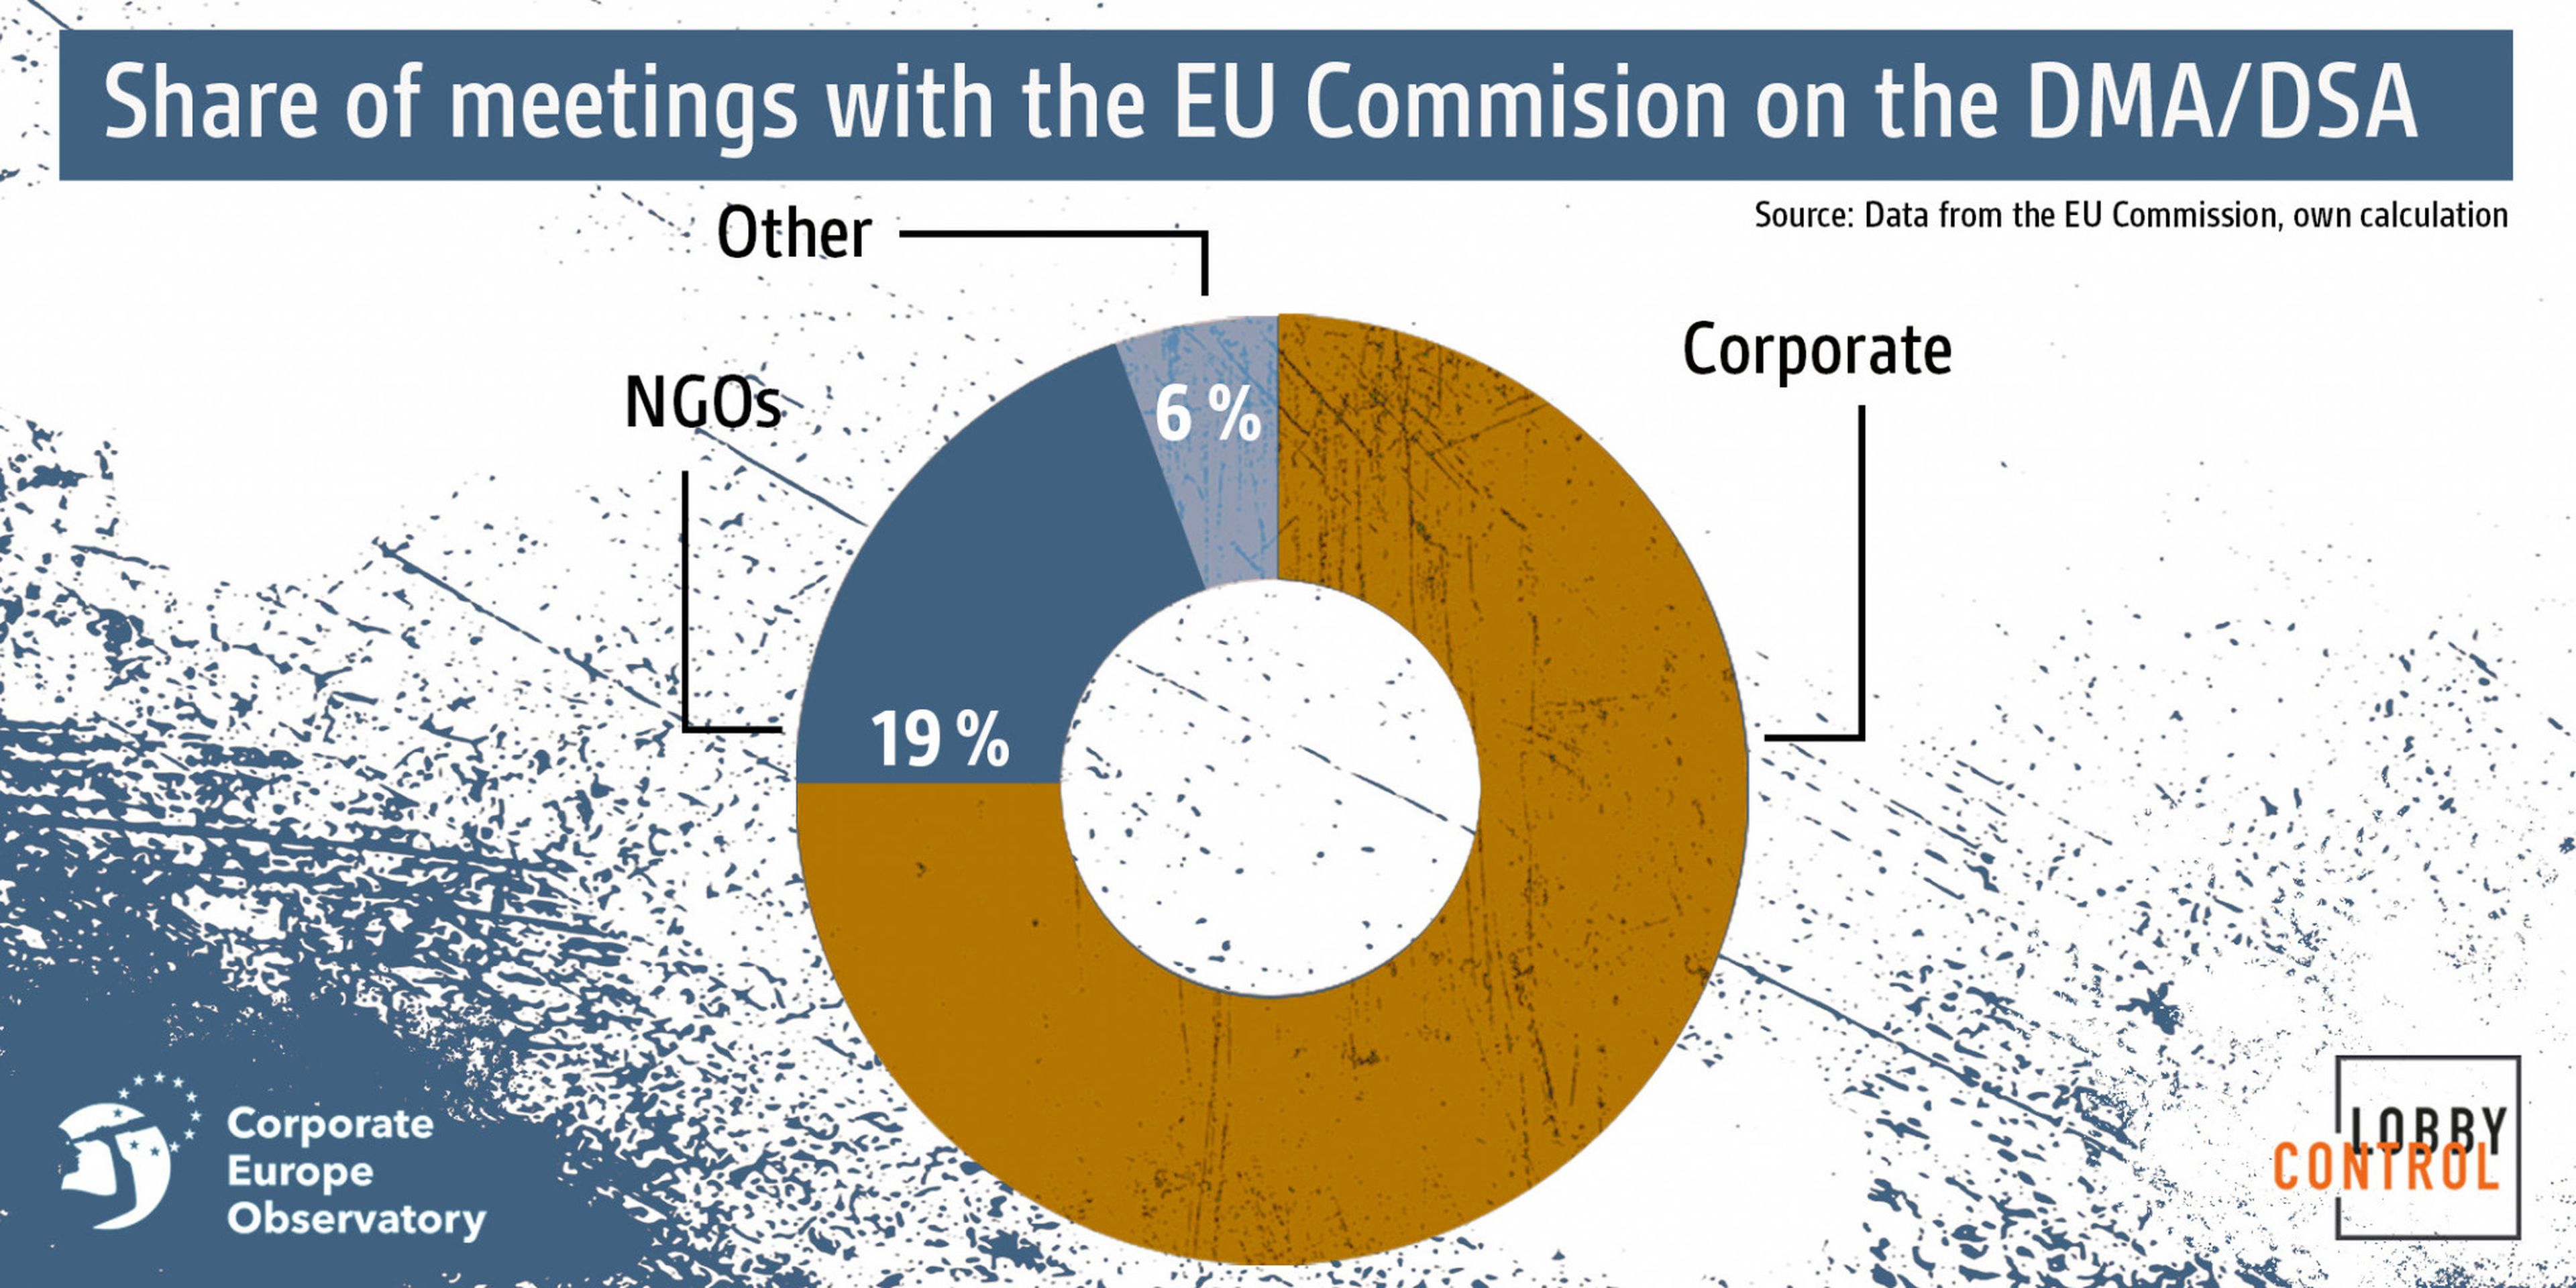 Reuniones de entidades con la Comisión Europea sobre la DMA y DSA: el 75% han sido mantenidas con empresas.